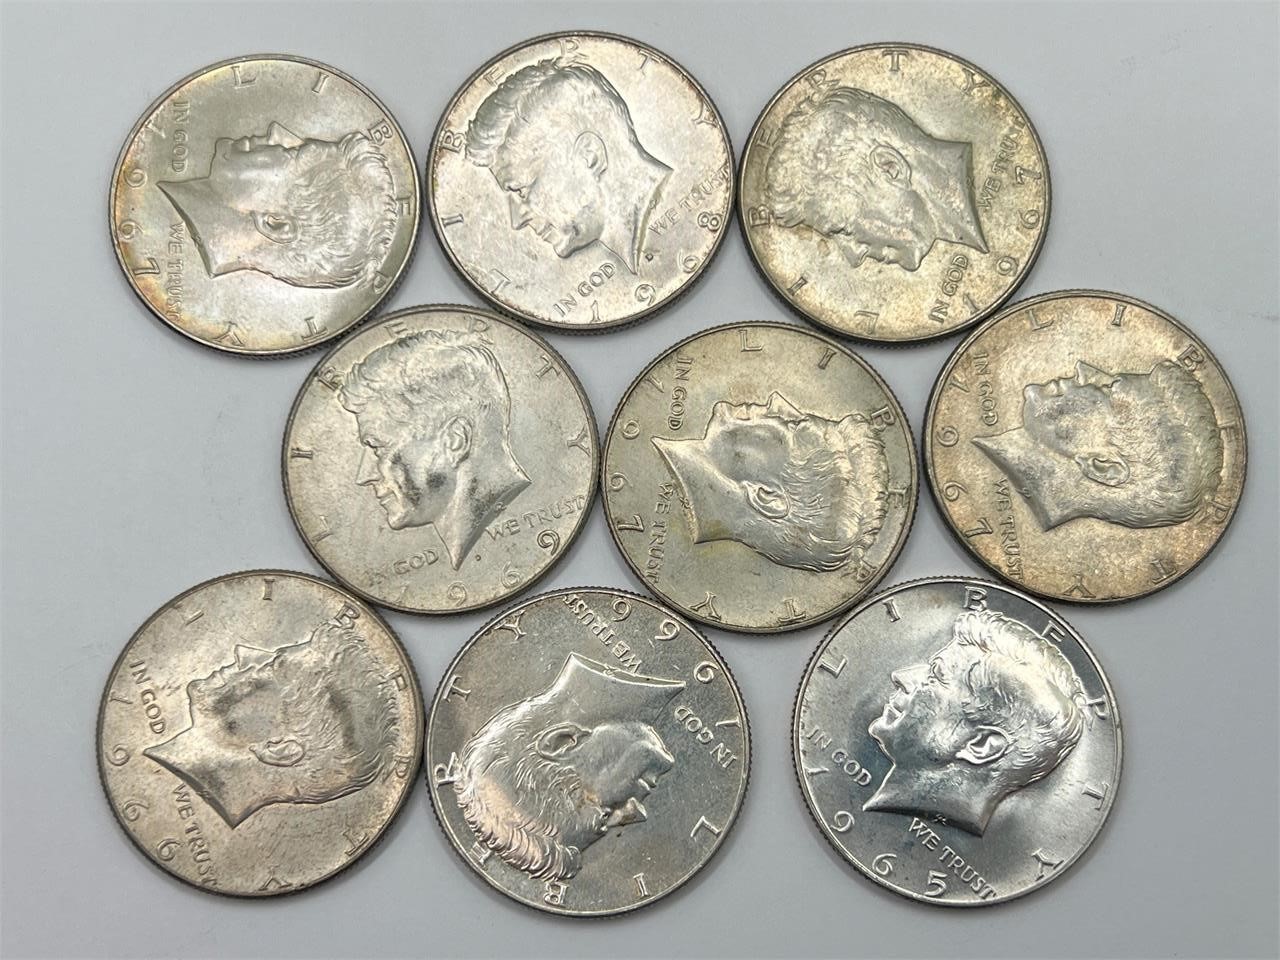 1965 - 1969 Kennedy Half Dollar Silver Coins